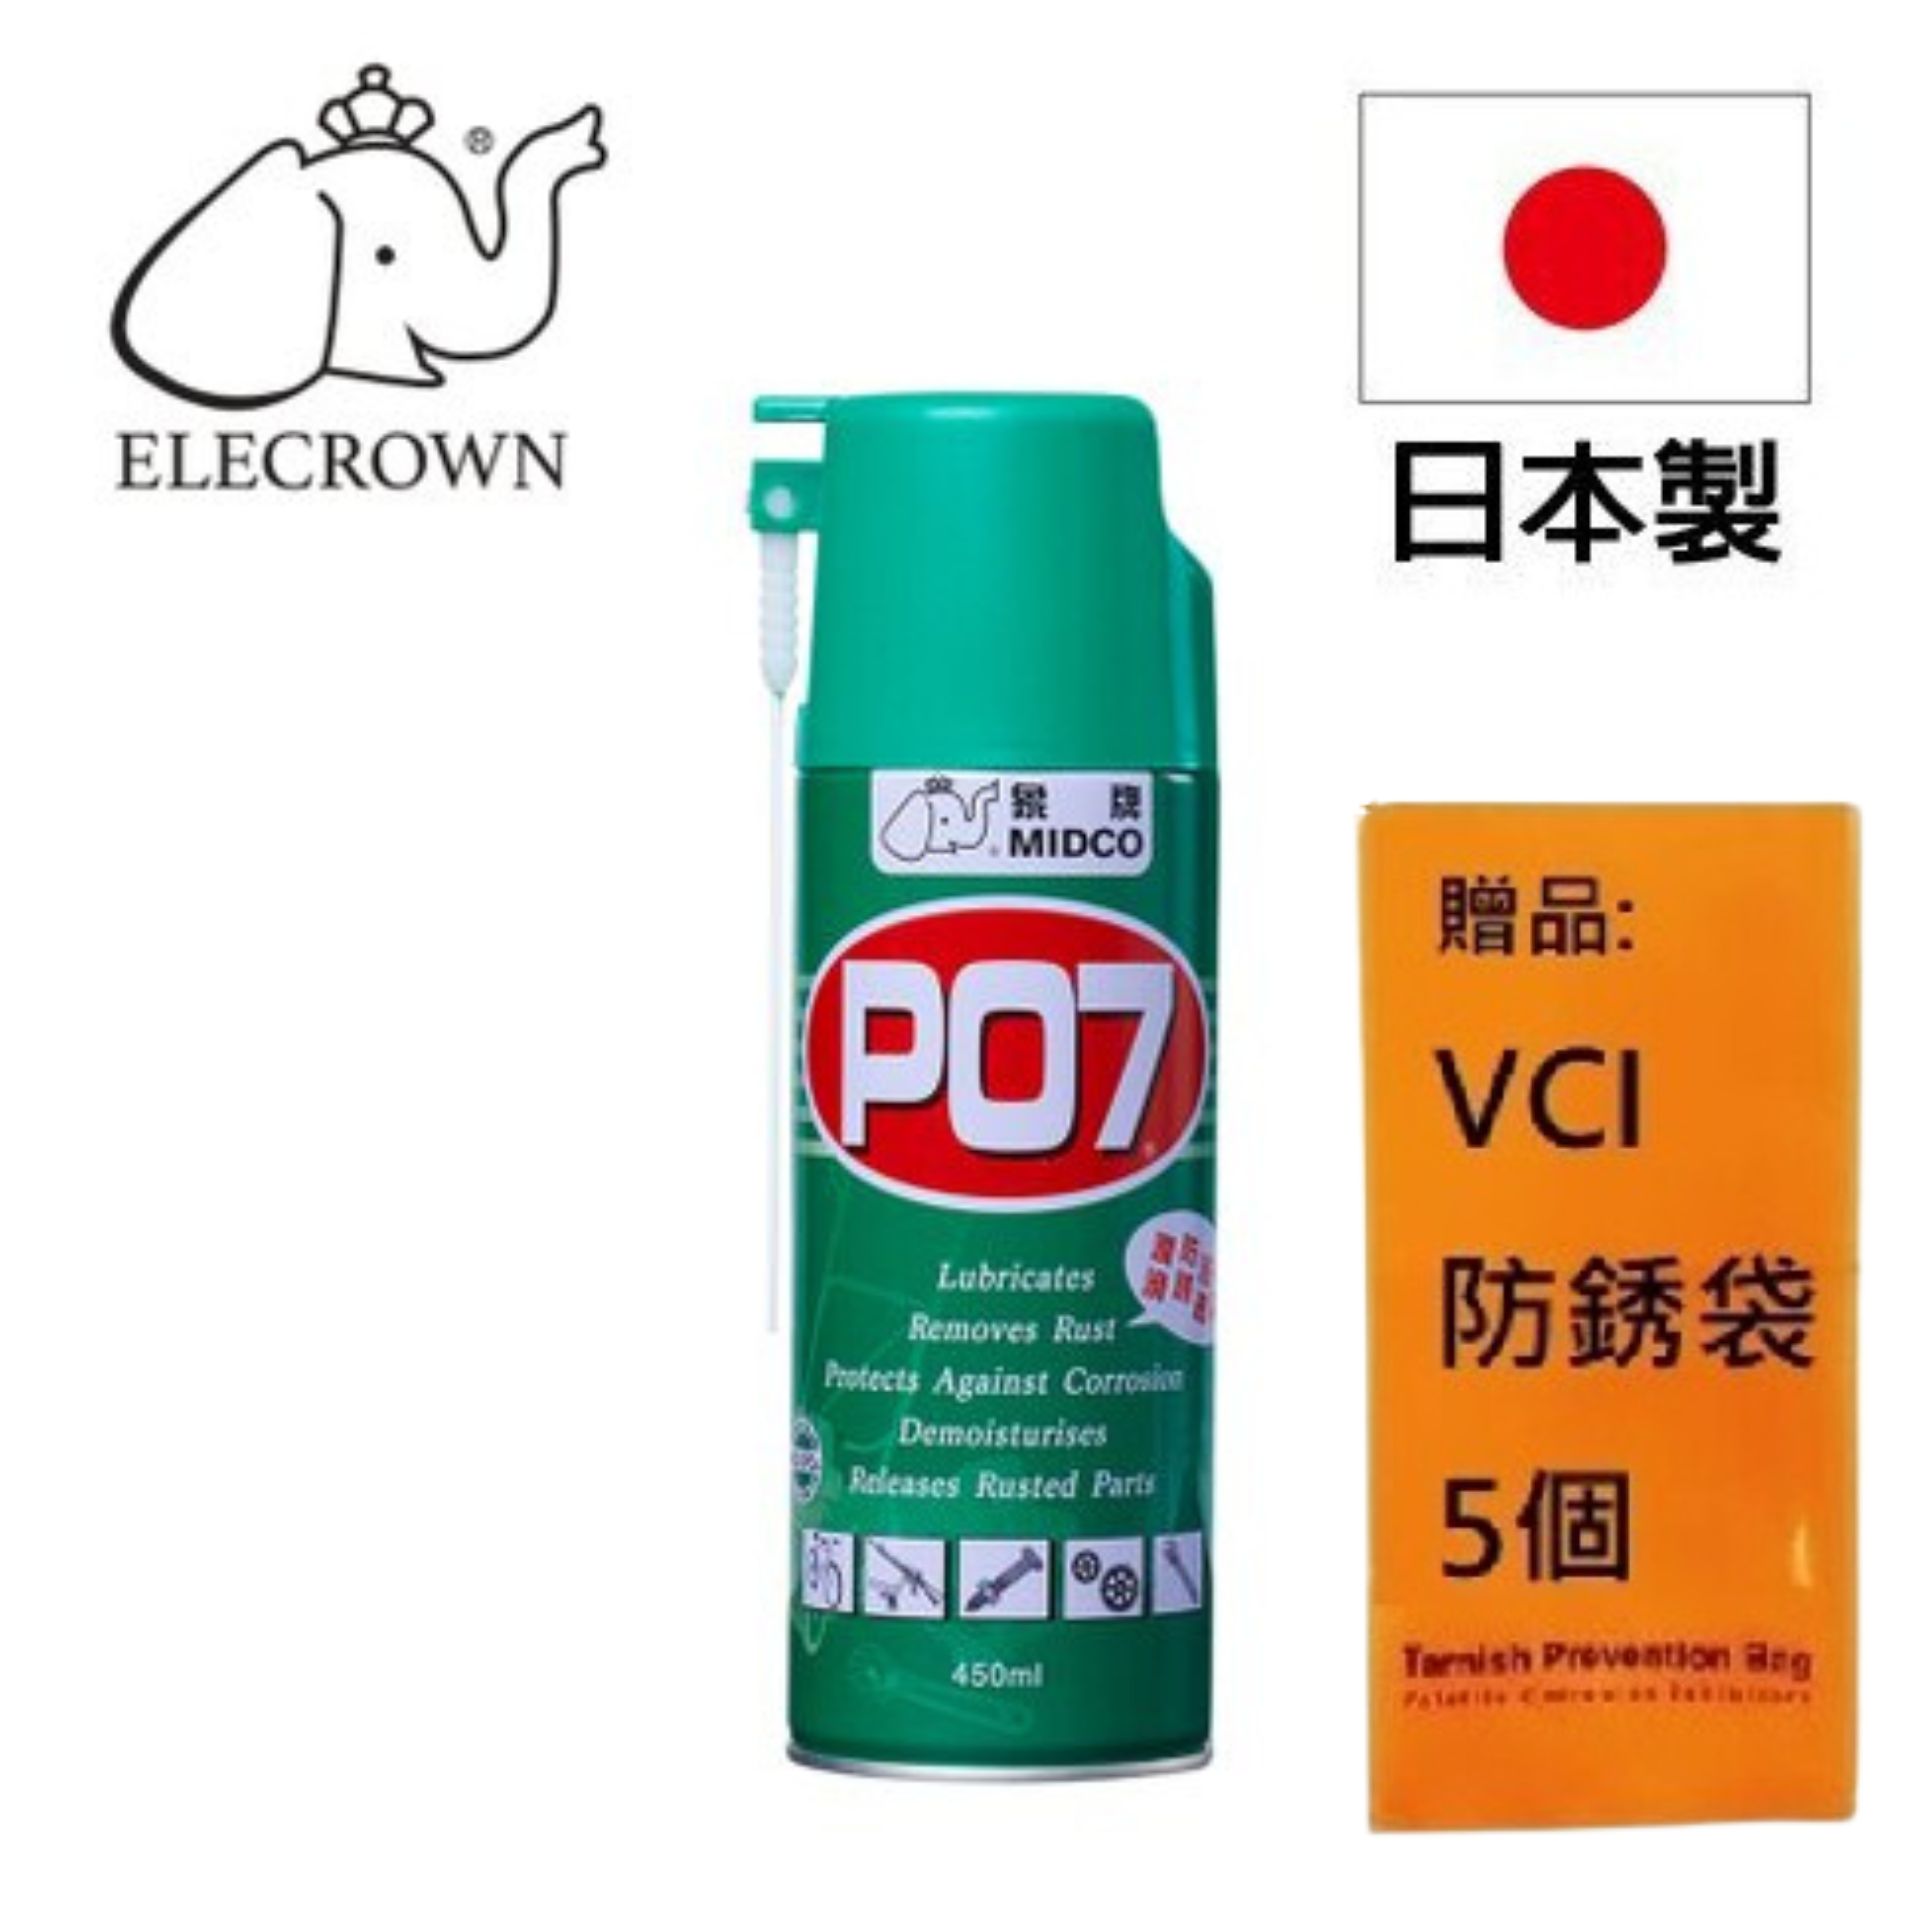 【象牌】防鏽油-P07 高效潤滑、消除雜音